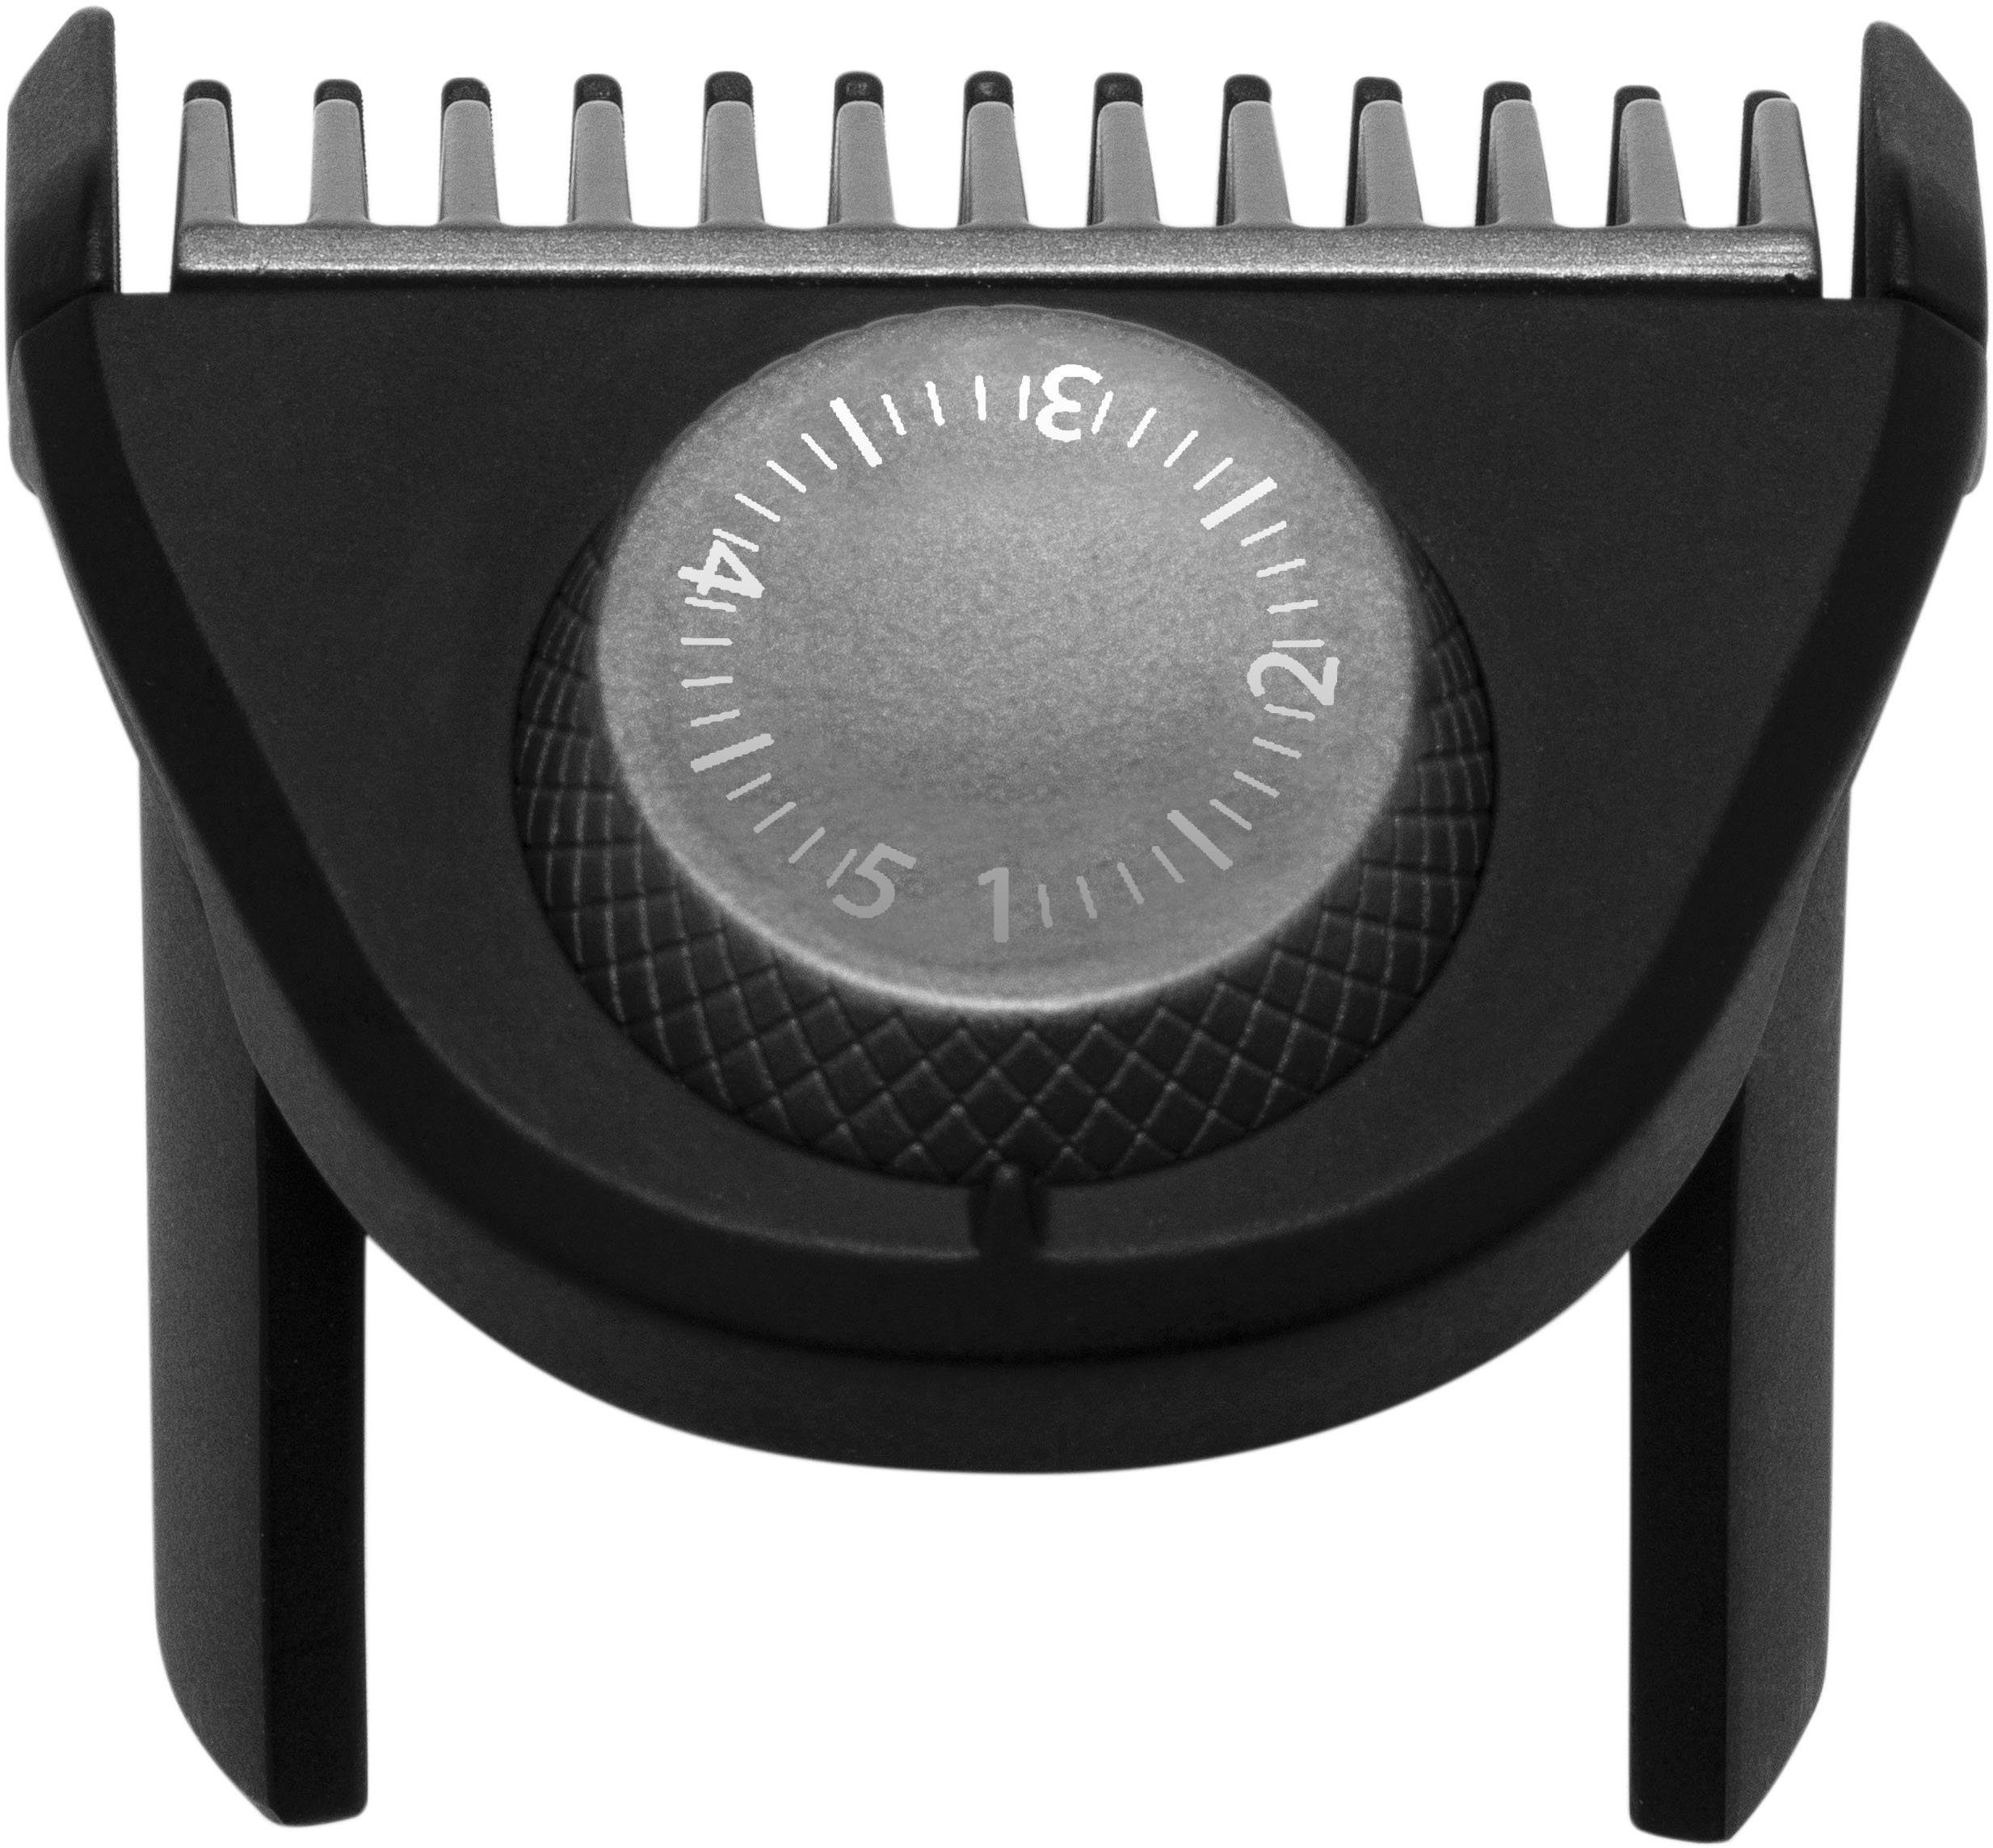 Remington Haarschneider Power-X Series Längeneinstellrad und Fade Abwaschbar HC6000, Micro Bartkamm, Haar-und kpl